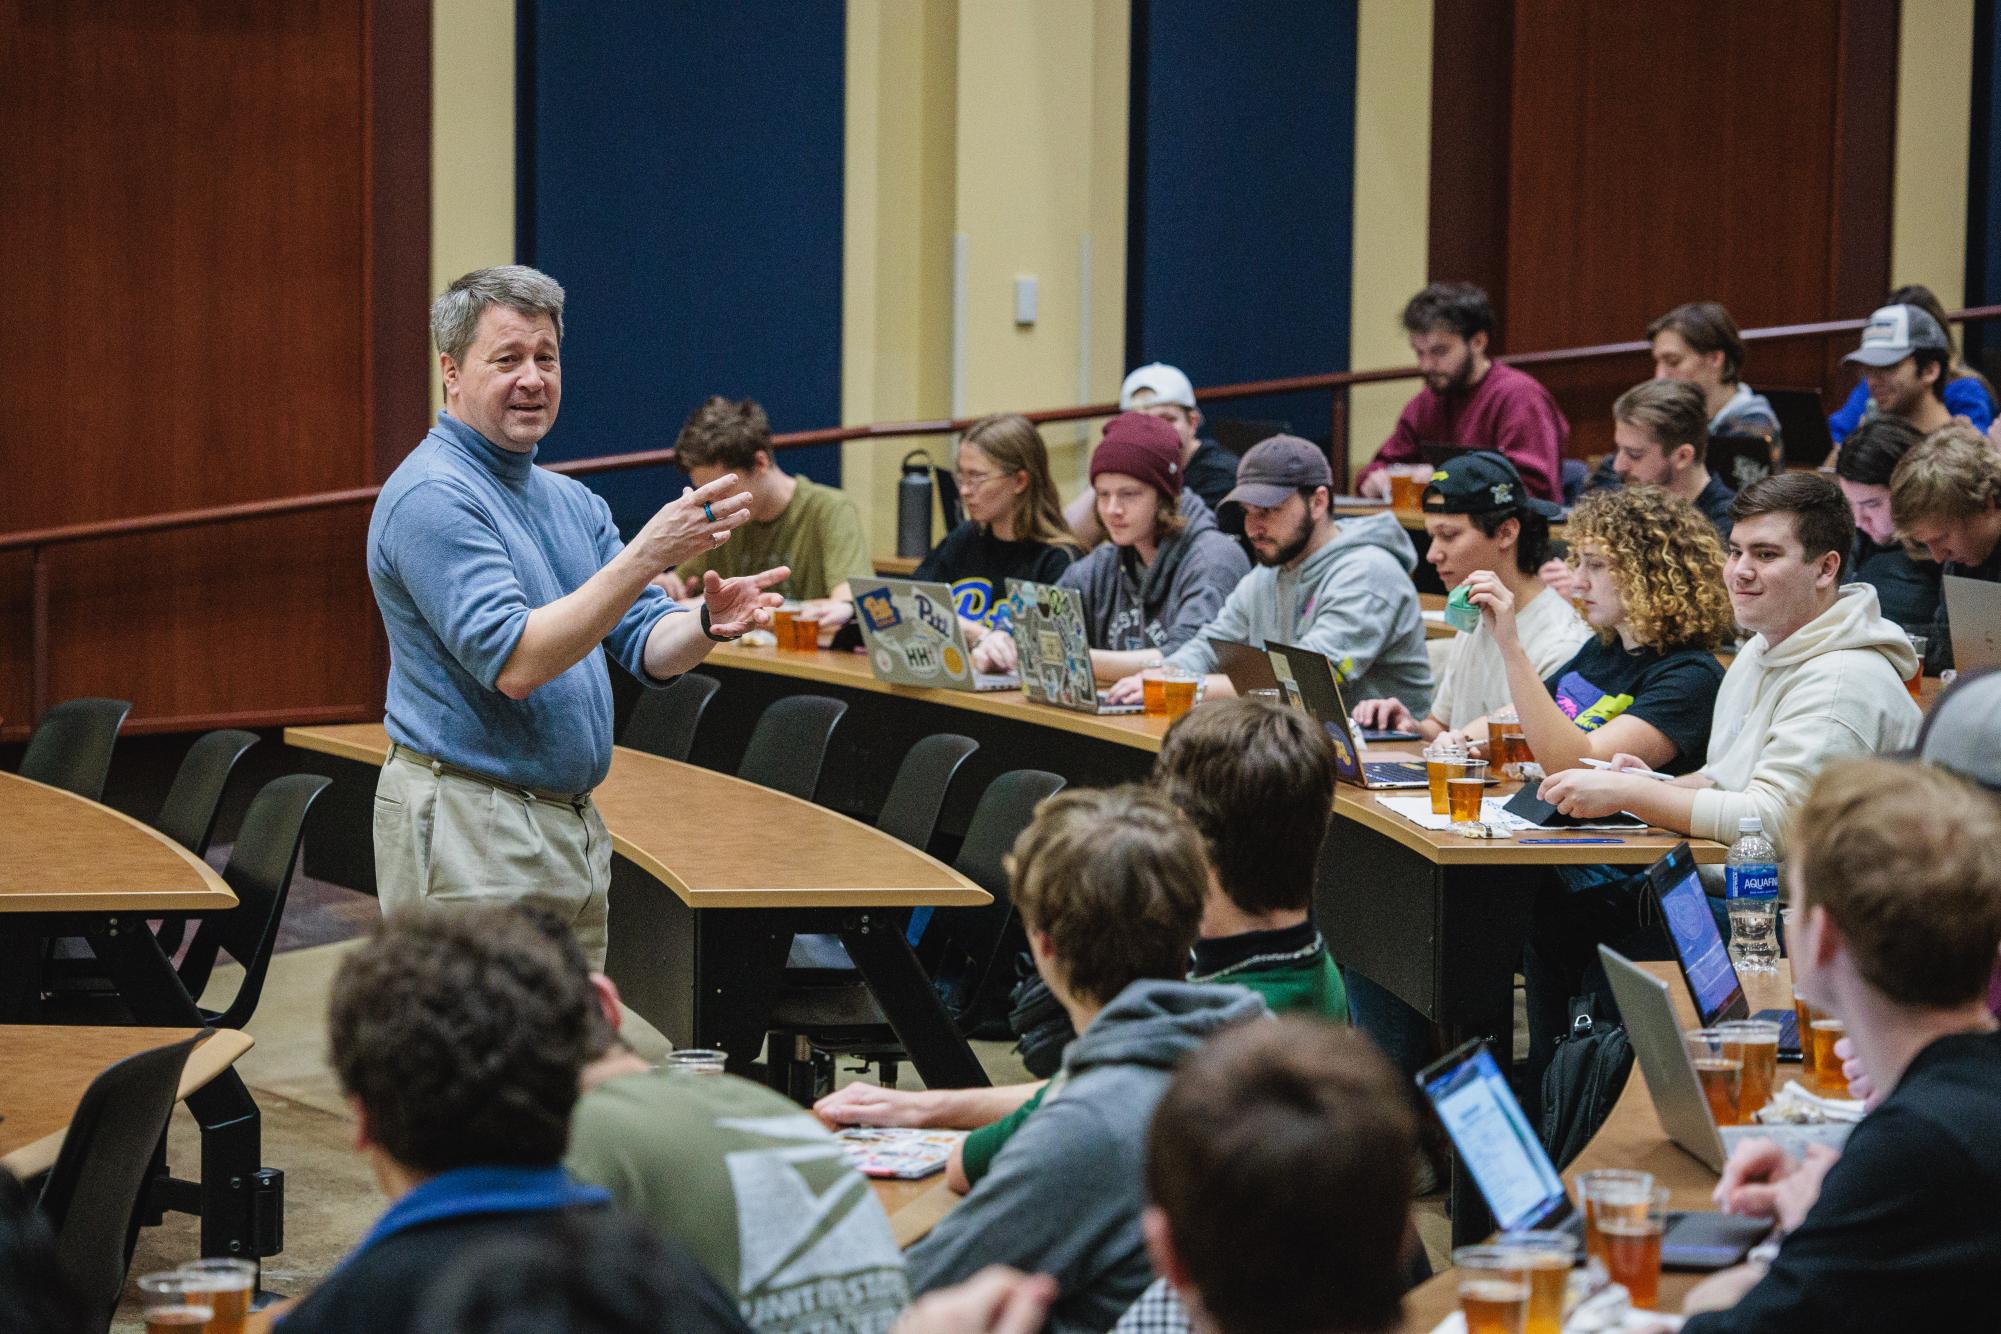 酿酒课程为学生提供了自制啤酒的机会